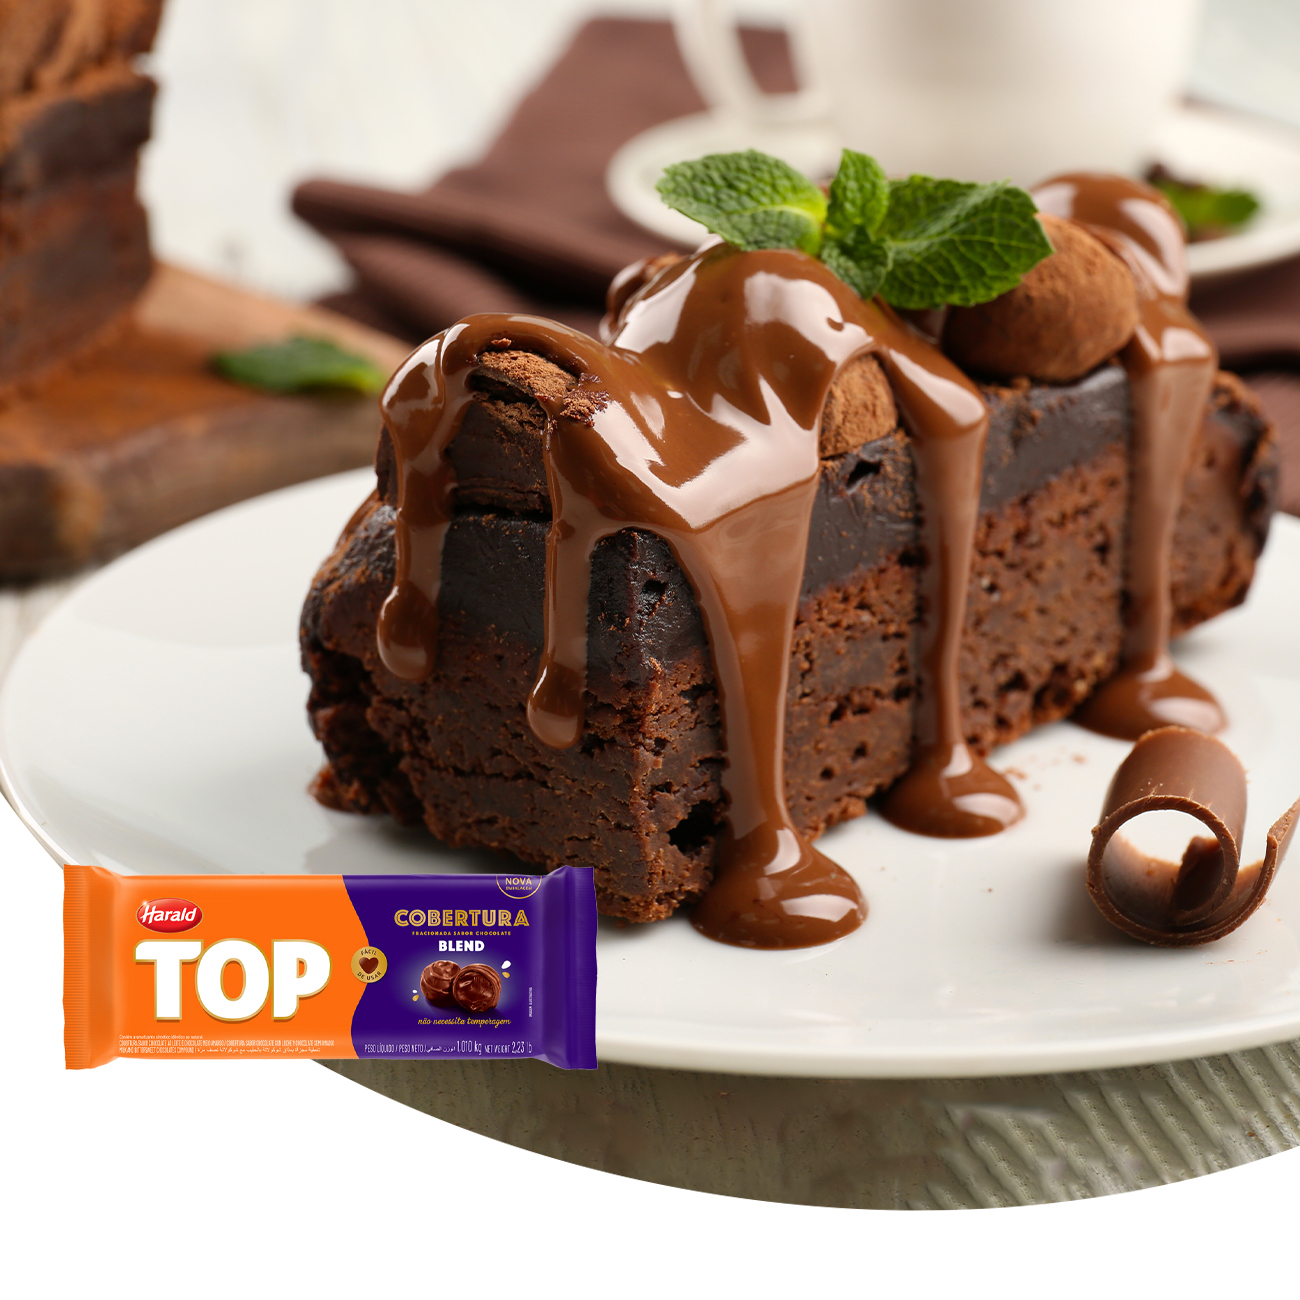 Cobertura de Chocolate em Barra Harald Top Blend 1,05kg